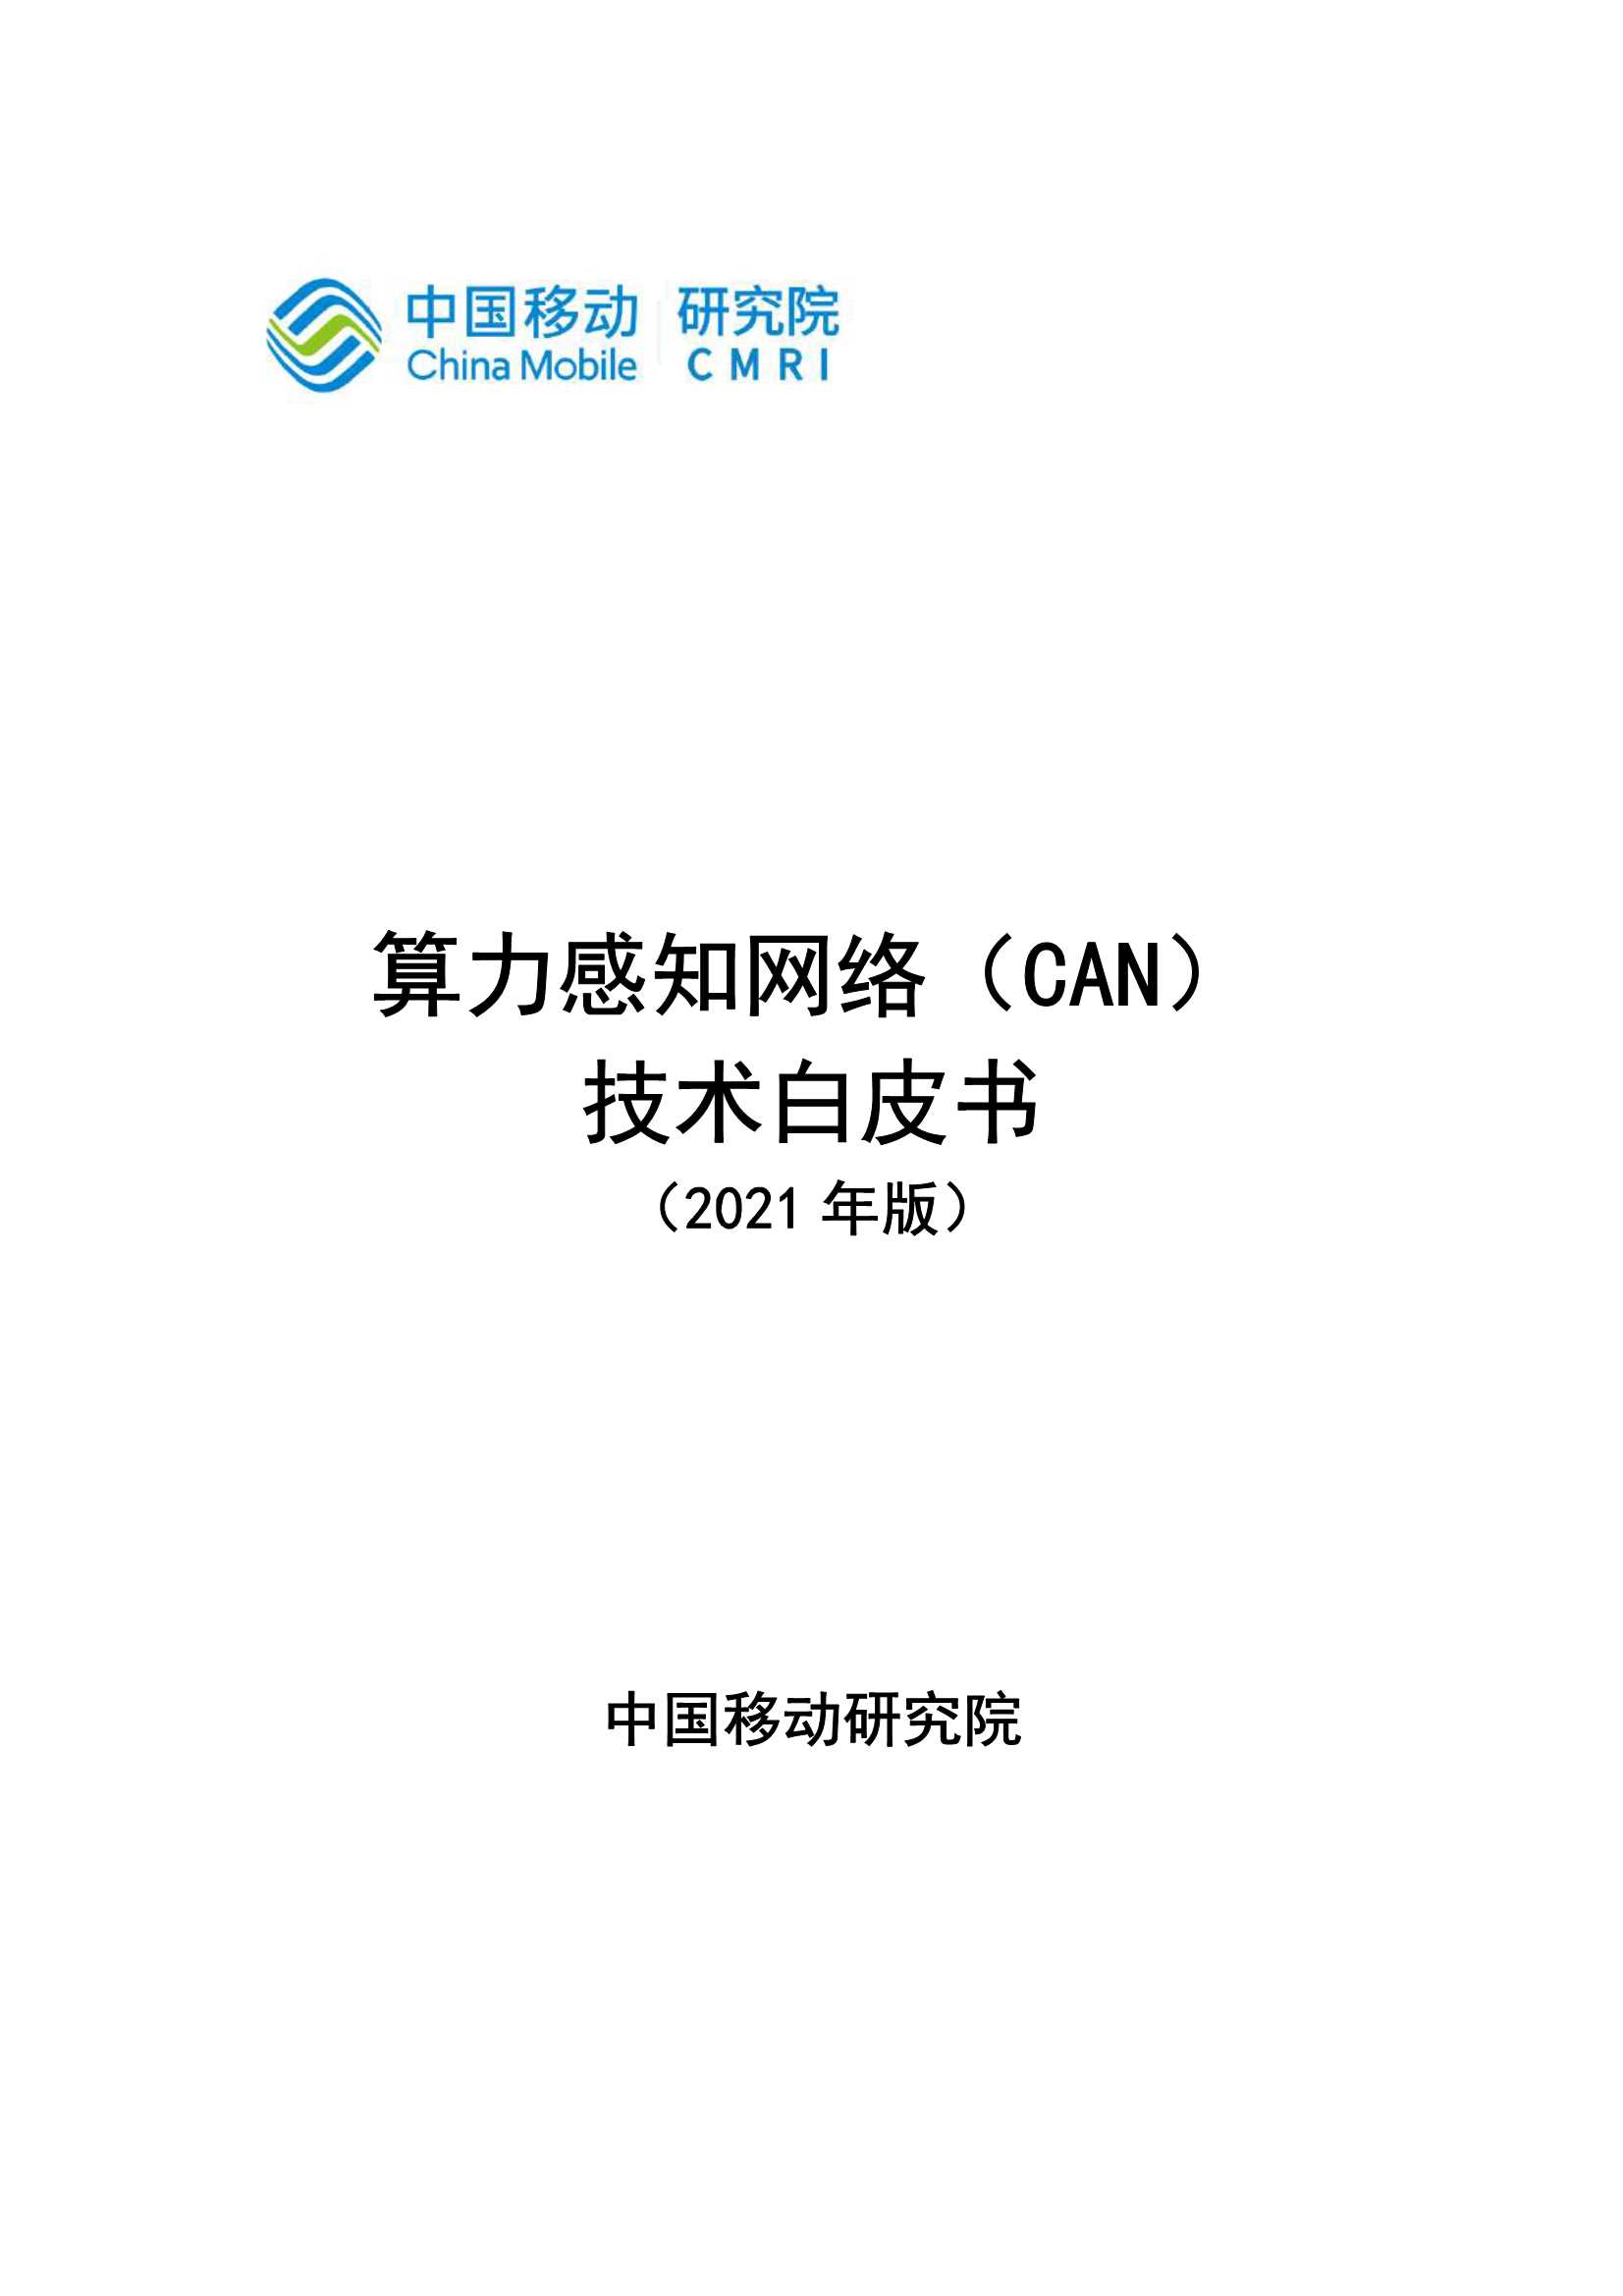 中国移动-算力感知网络CAN技术白皮书-2021.05-27页